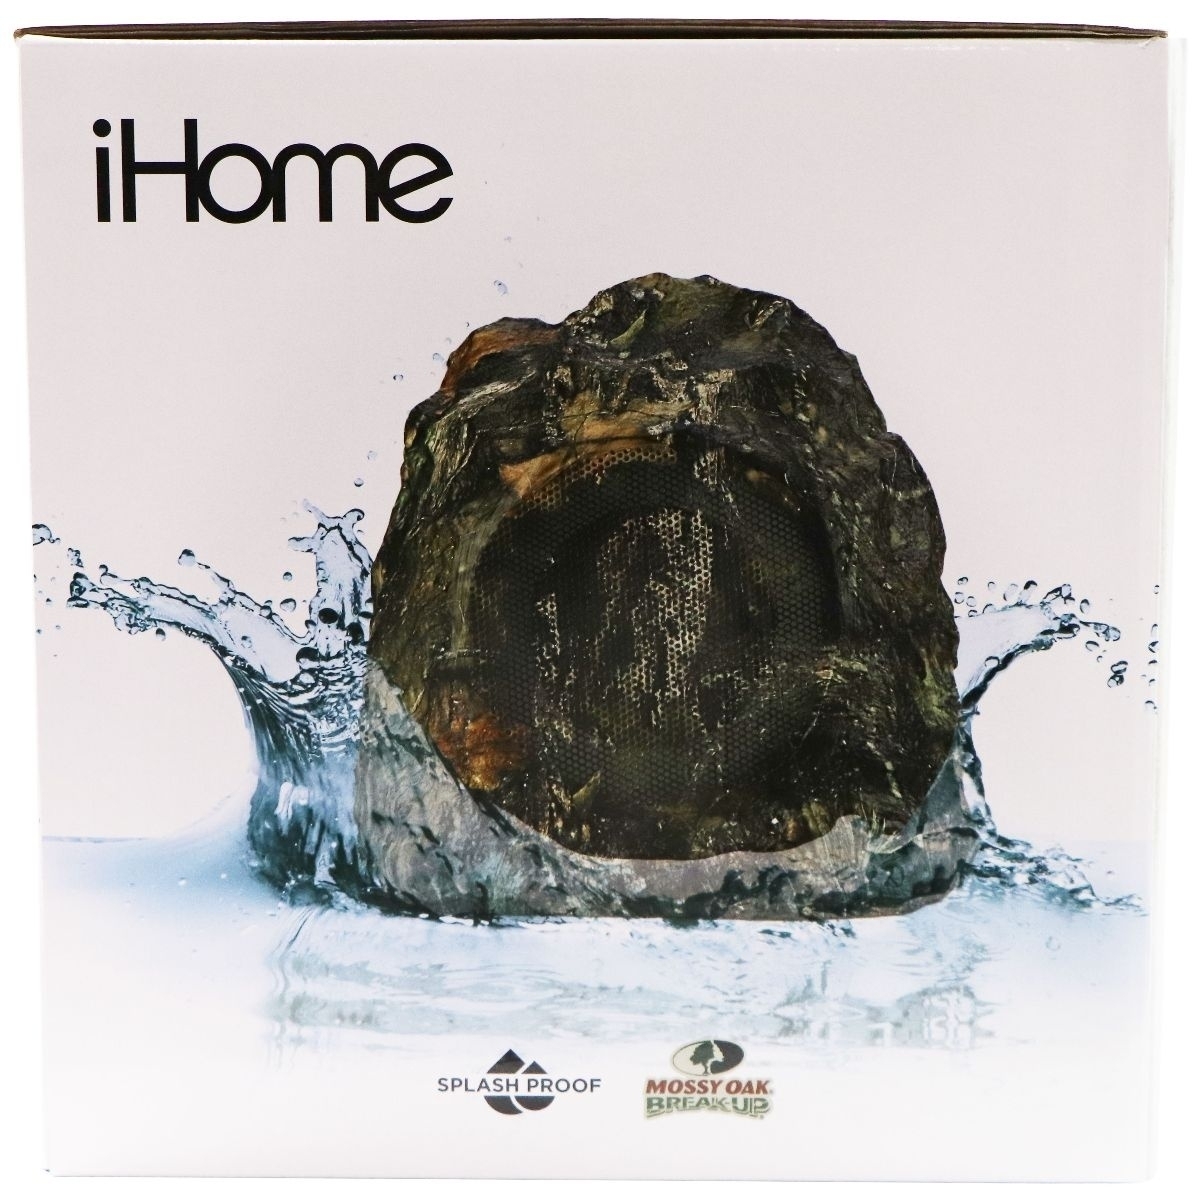 IHome Wireless Waterproof Outdoor Rock Speaker Set - Mossy Oak Camo